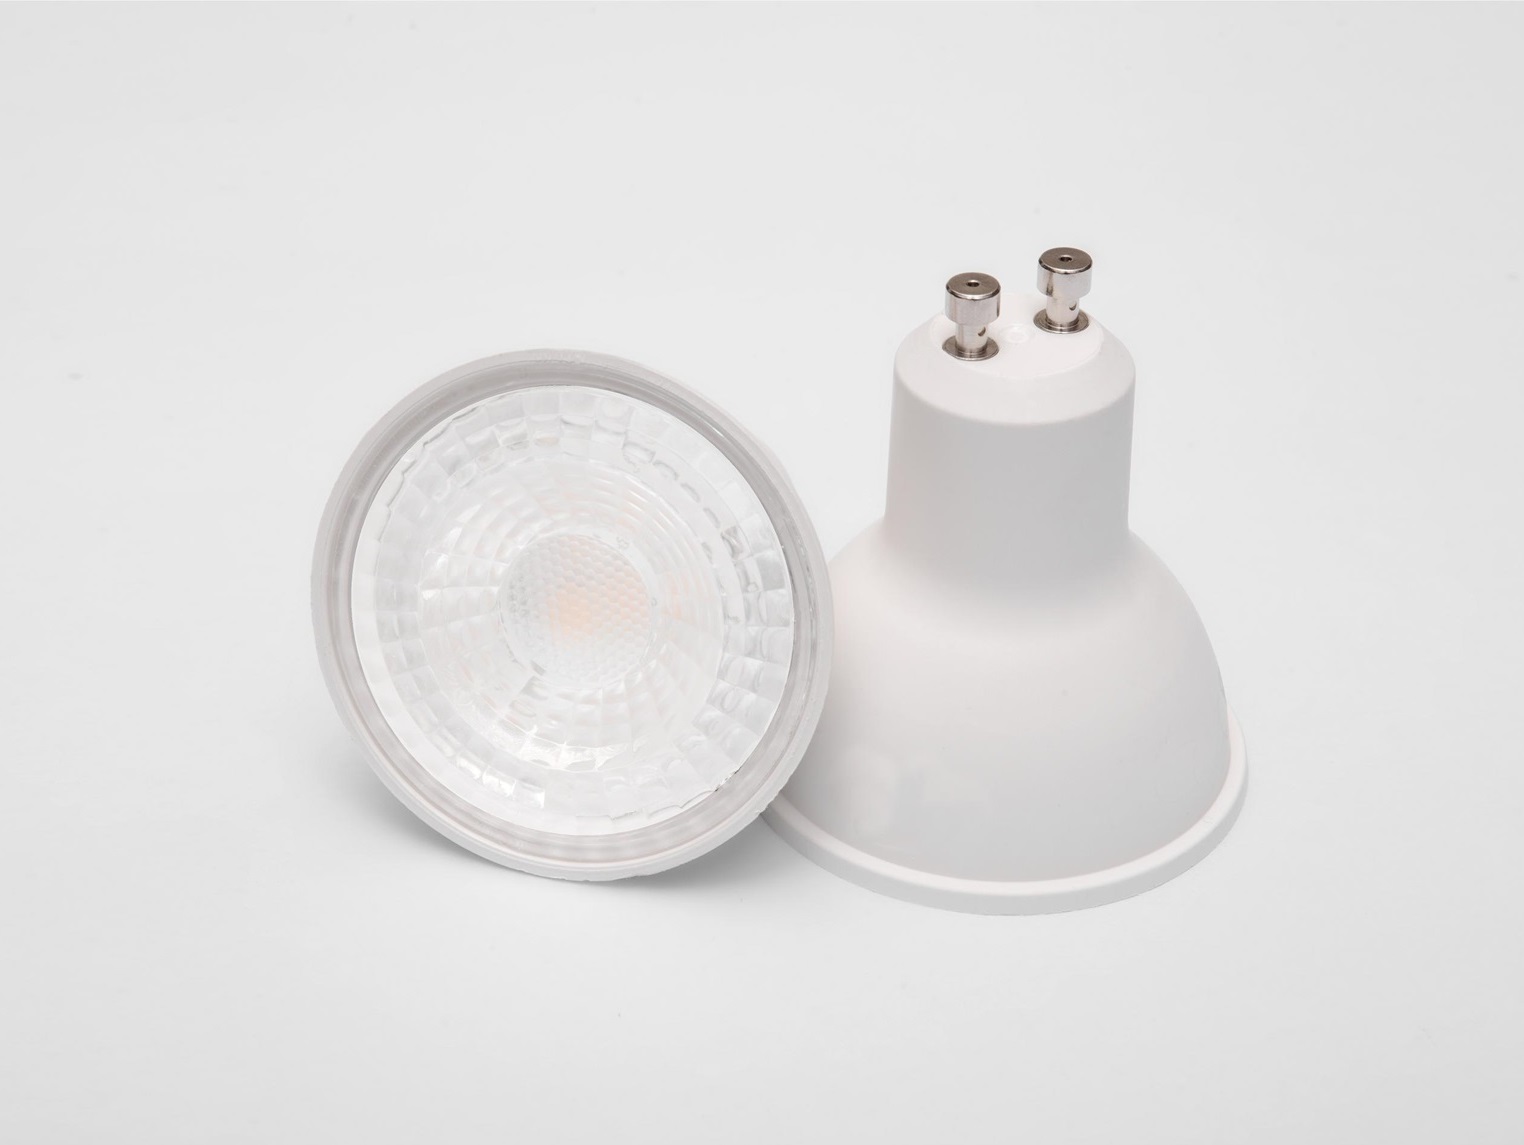 Diffusorfolie ❤ LED Filterfolie ❤ Warmlichtfilter